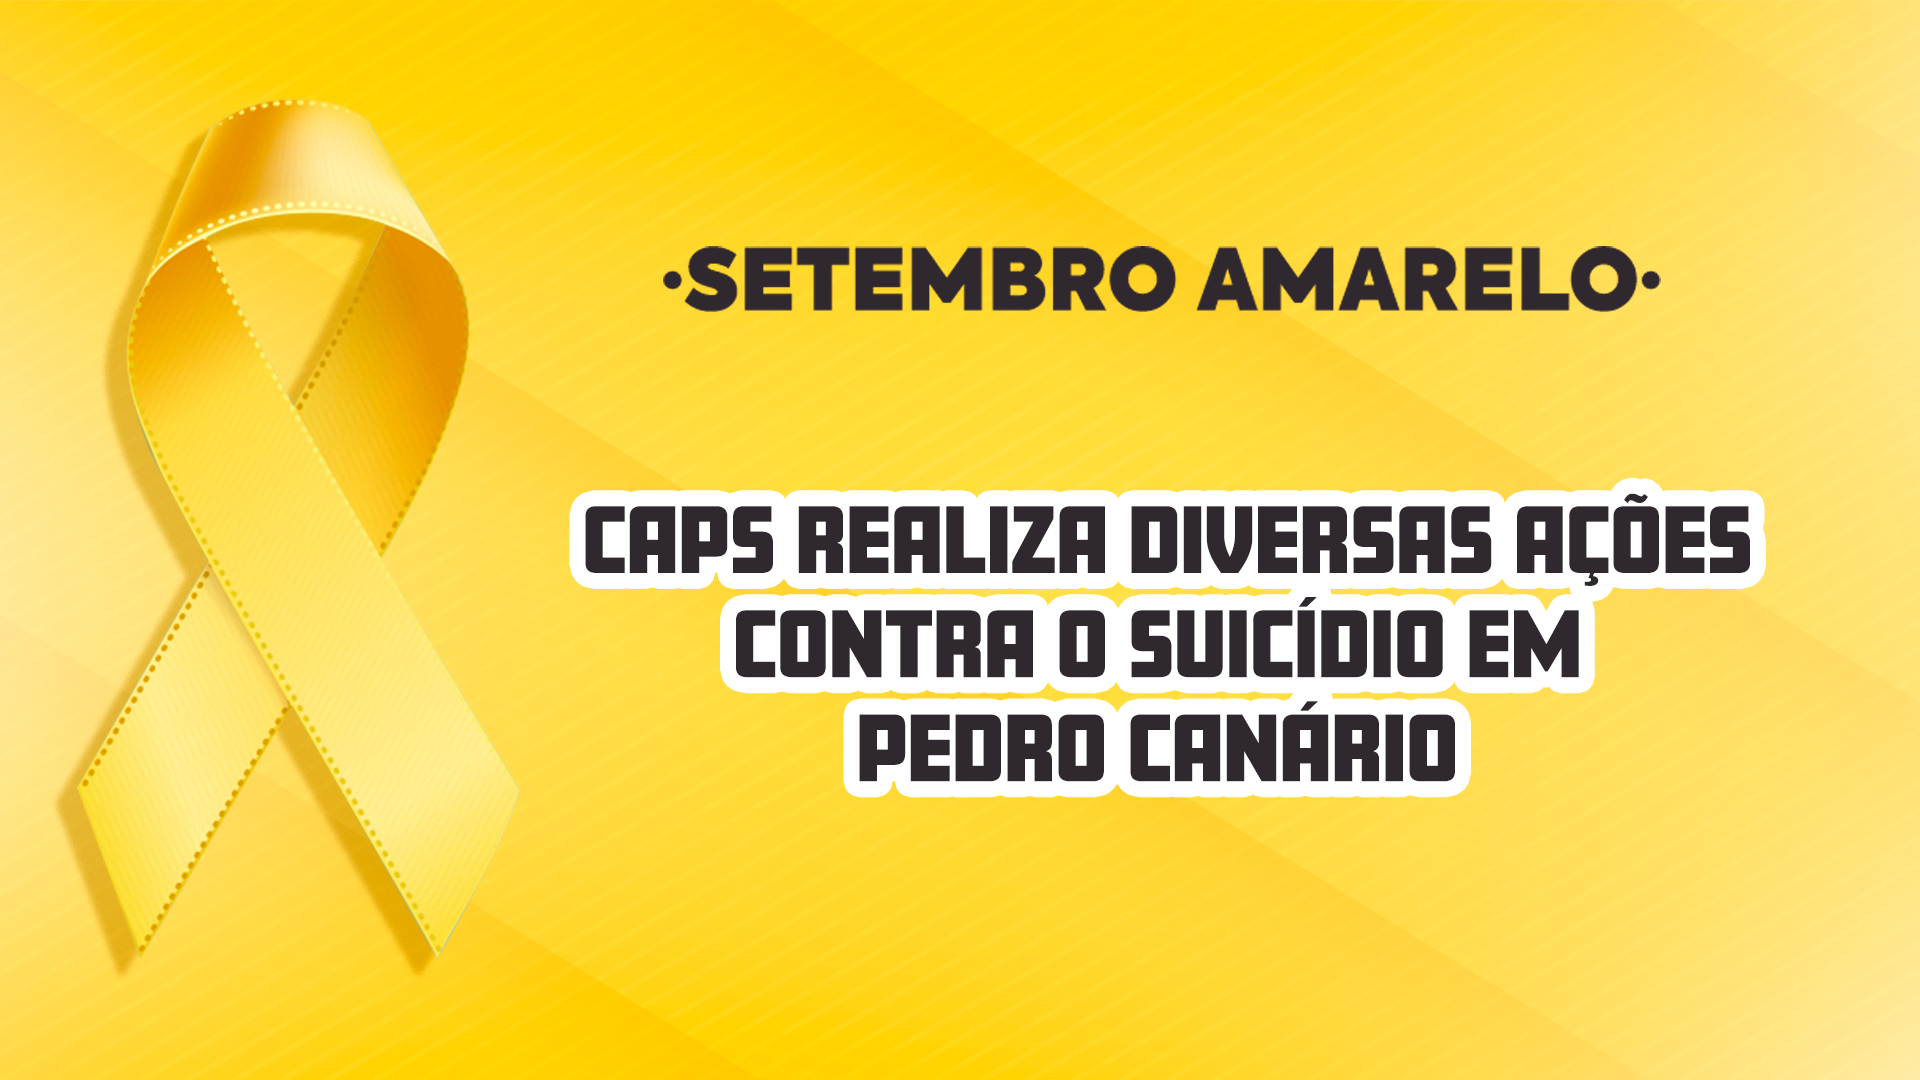 NOTÍCIA: Setembro Amarelo: CAPS realiza diversas ações contra o suicídio em Pedro Canário